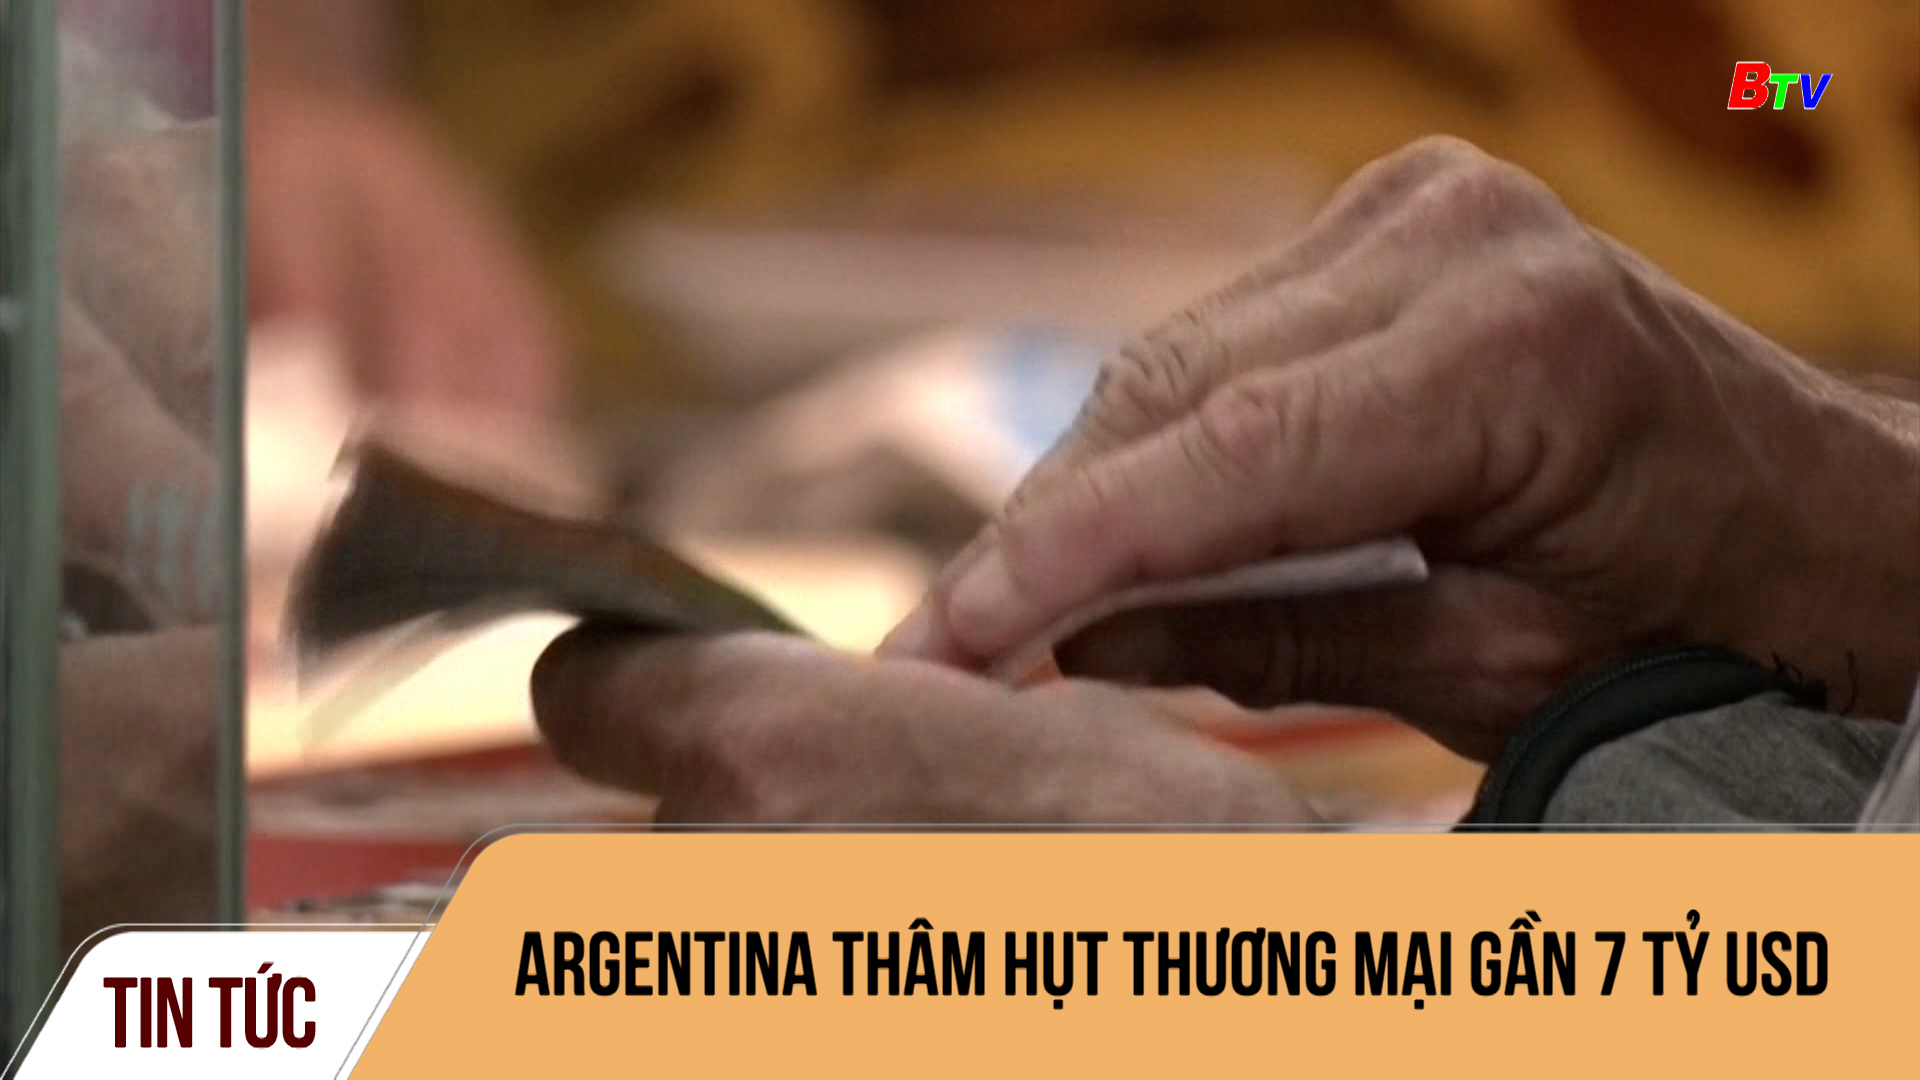 Argentina thâm hụt thương mại gần 7 tỷ USD